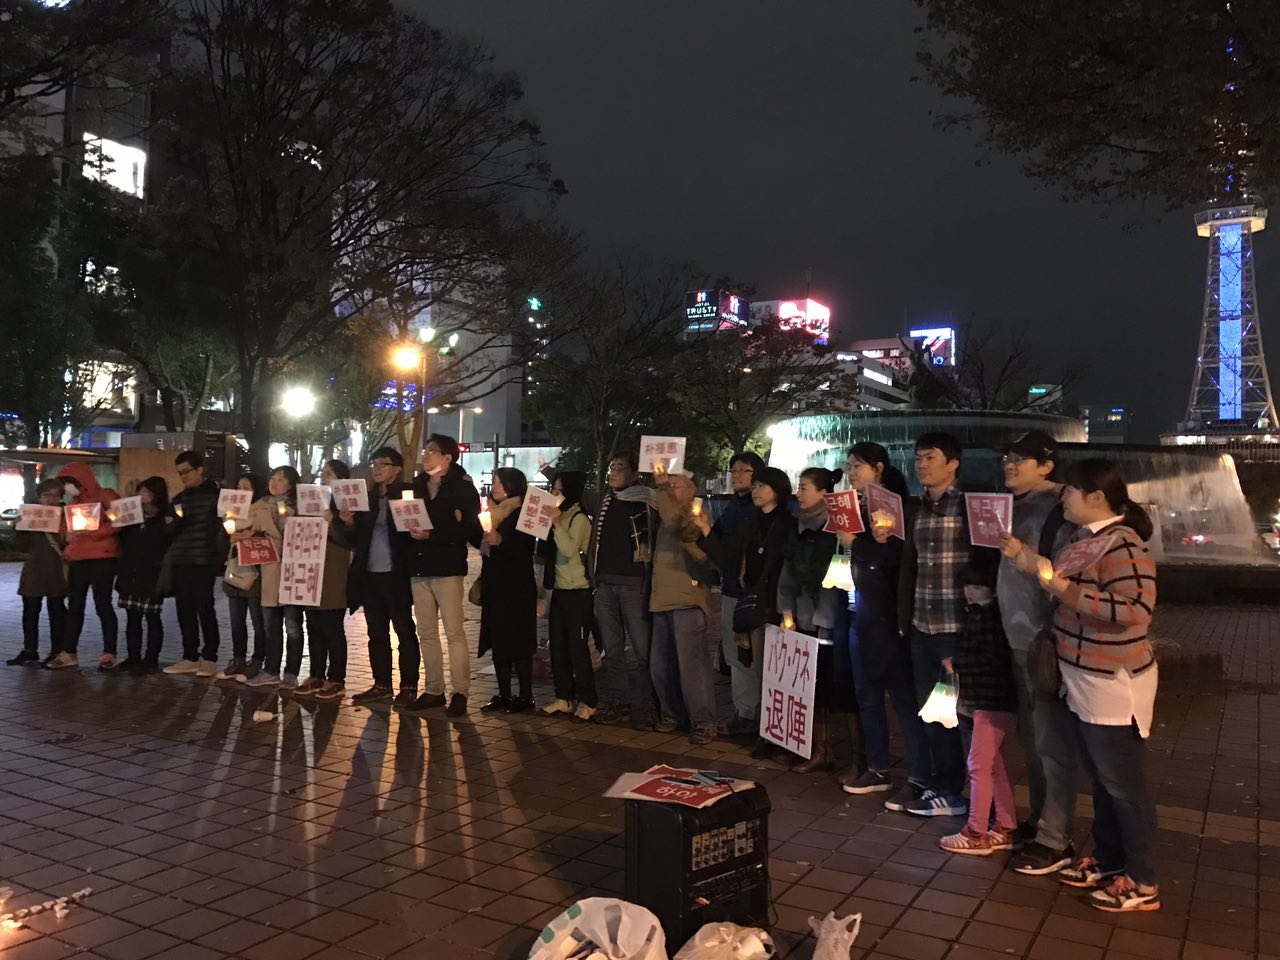 박근혜 퇴진을 요구하는 일본 나고야 거주 교민들. 나고야의 중심가인 사카에에서 열렸다. 뒷쪽에는 나고야의 상징물인 텔레비젼 탑.